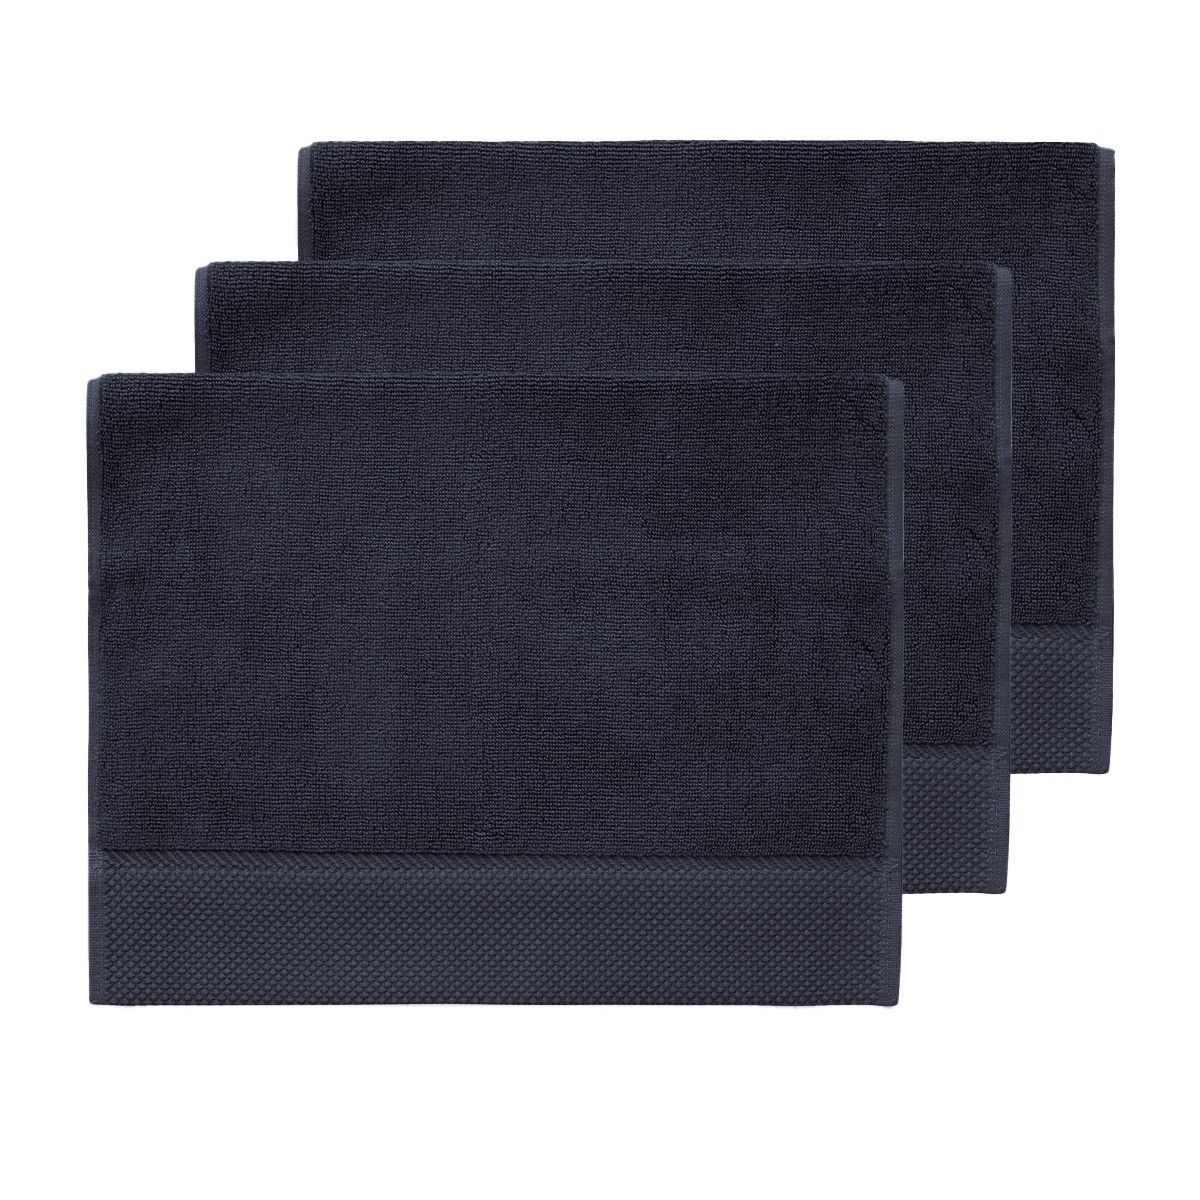 3 grandes serviettes d'invité zéro twist 560g Bleu Nuit 40x60 cm